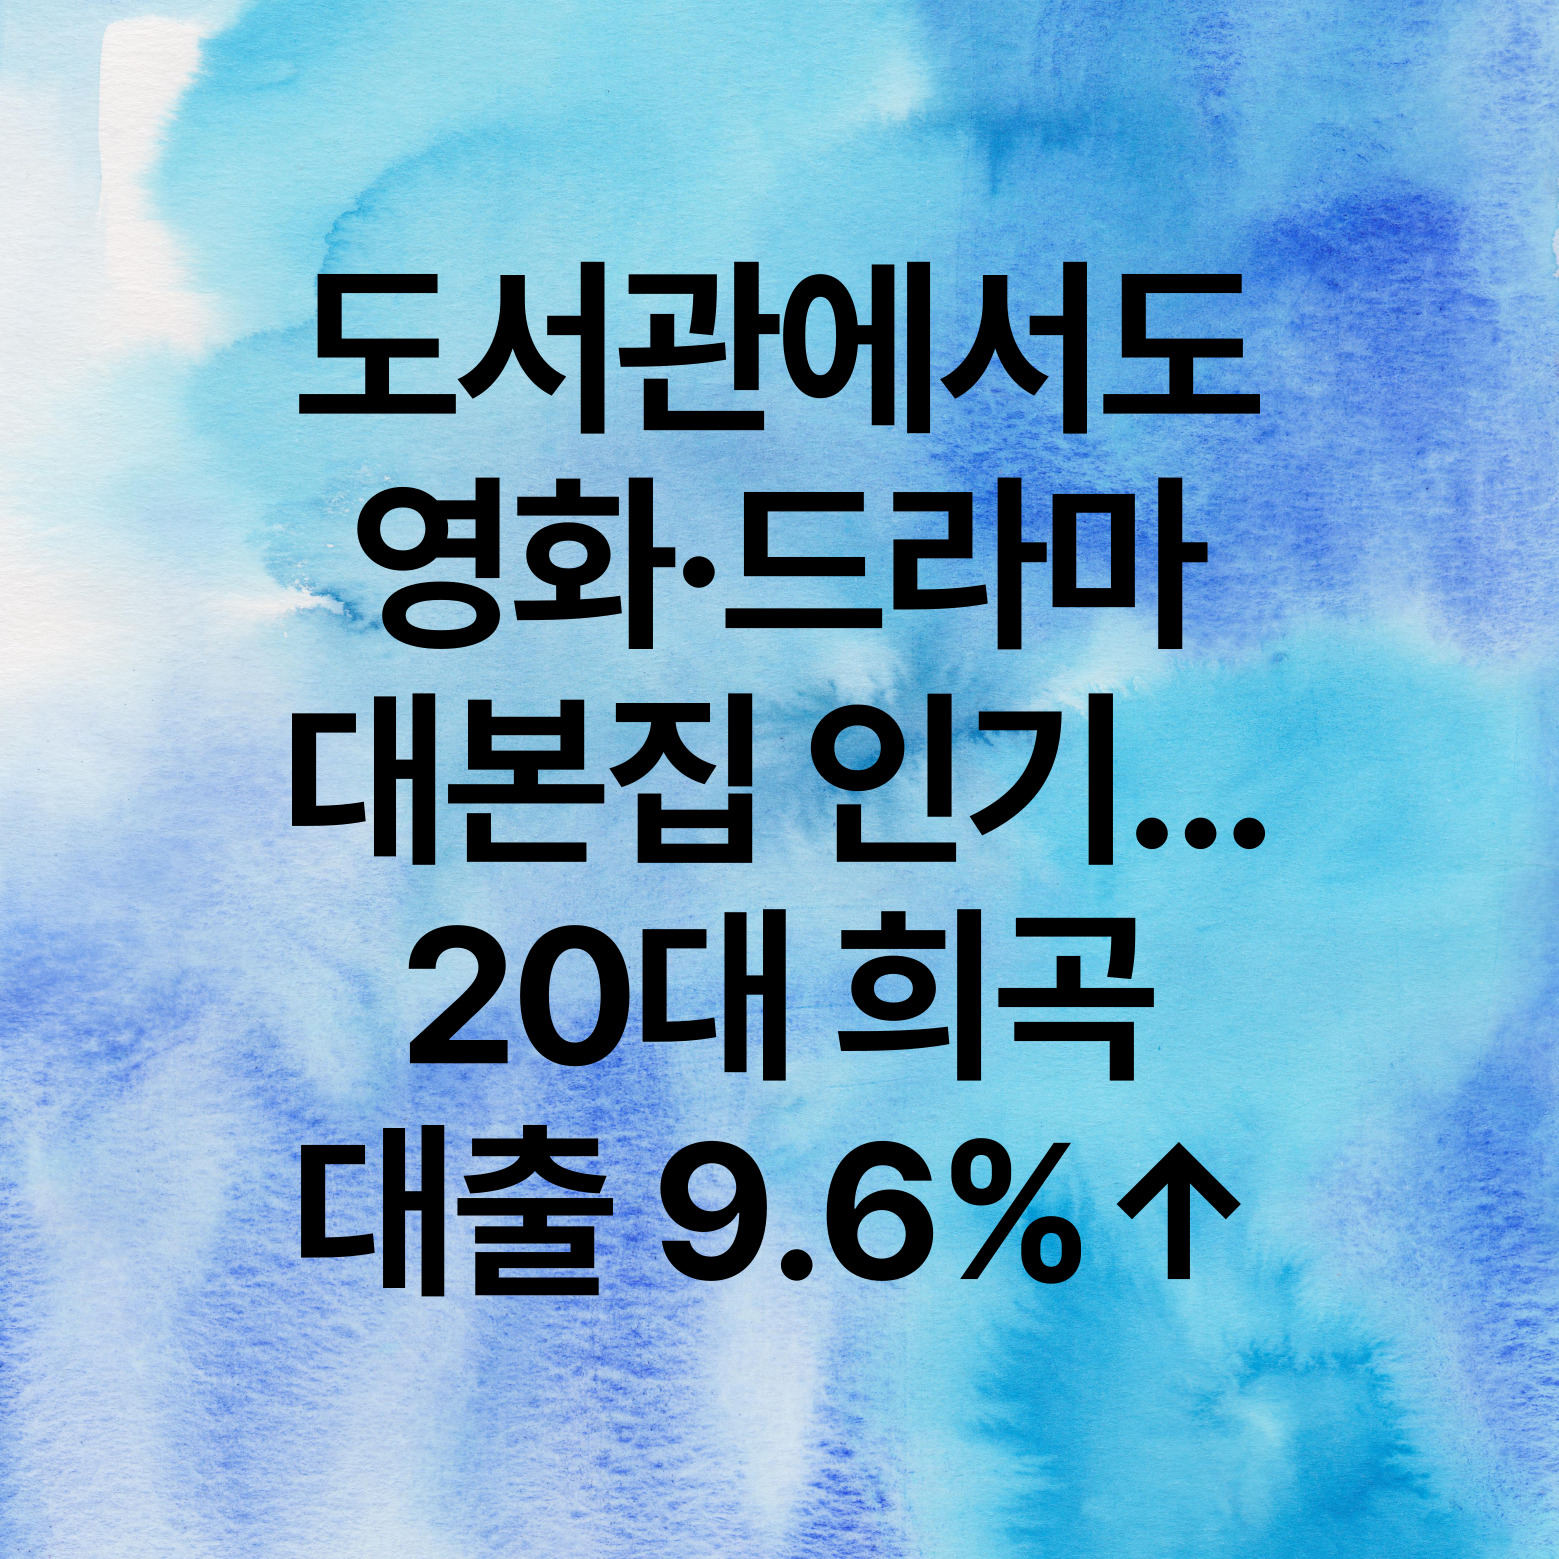 도서관에서도 영화, 드라마 대본집 인기. 20대 희곡 대출 9.6% 상승